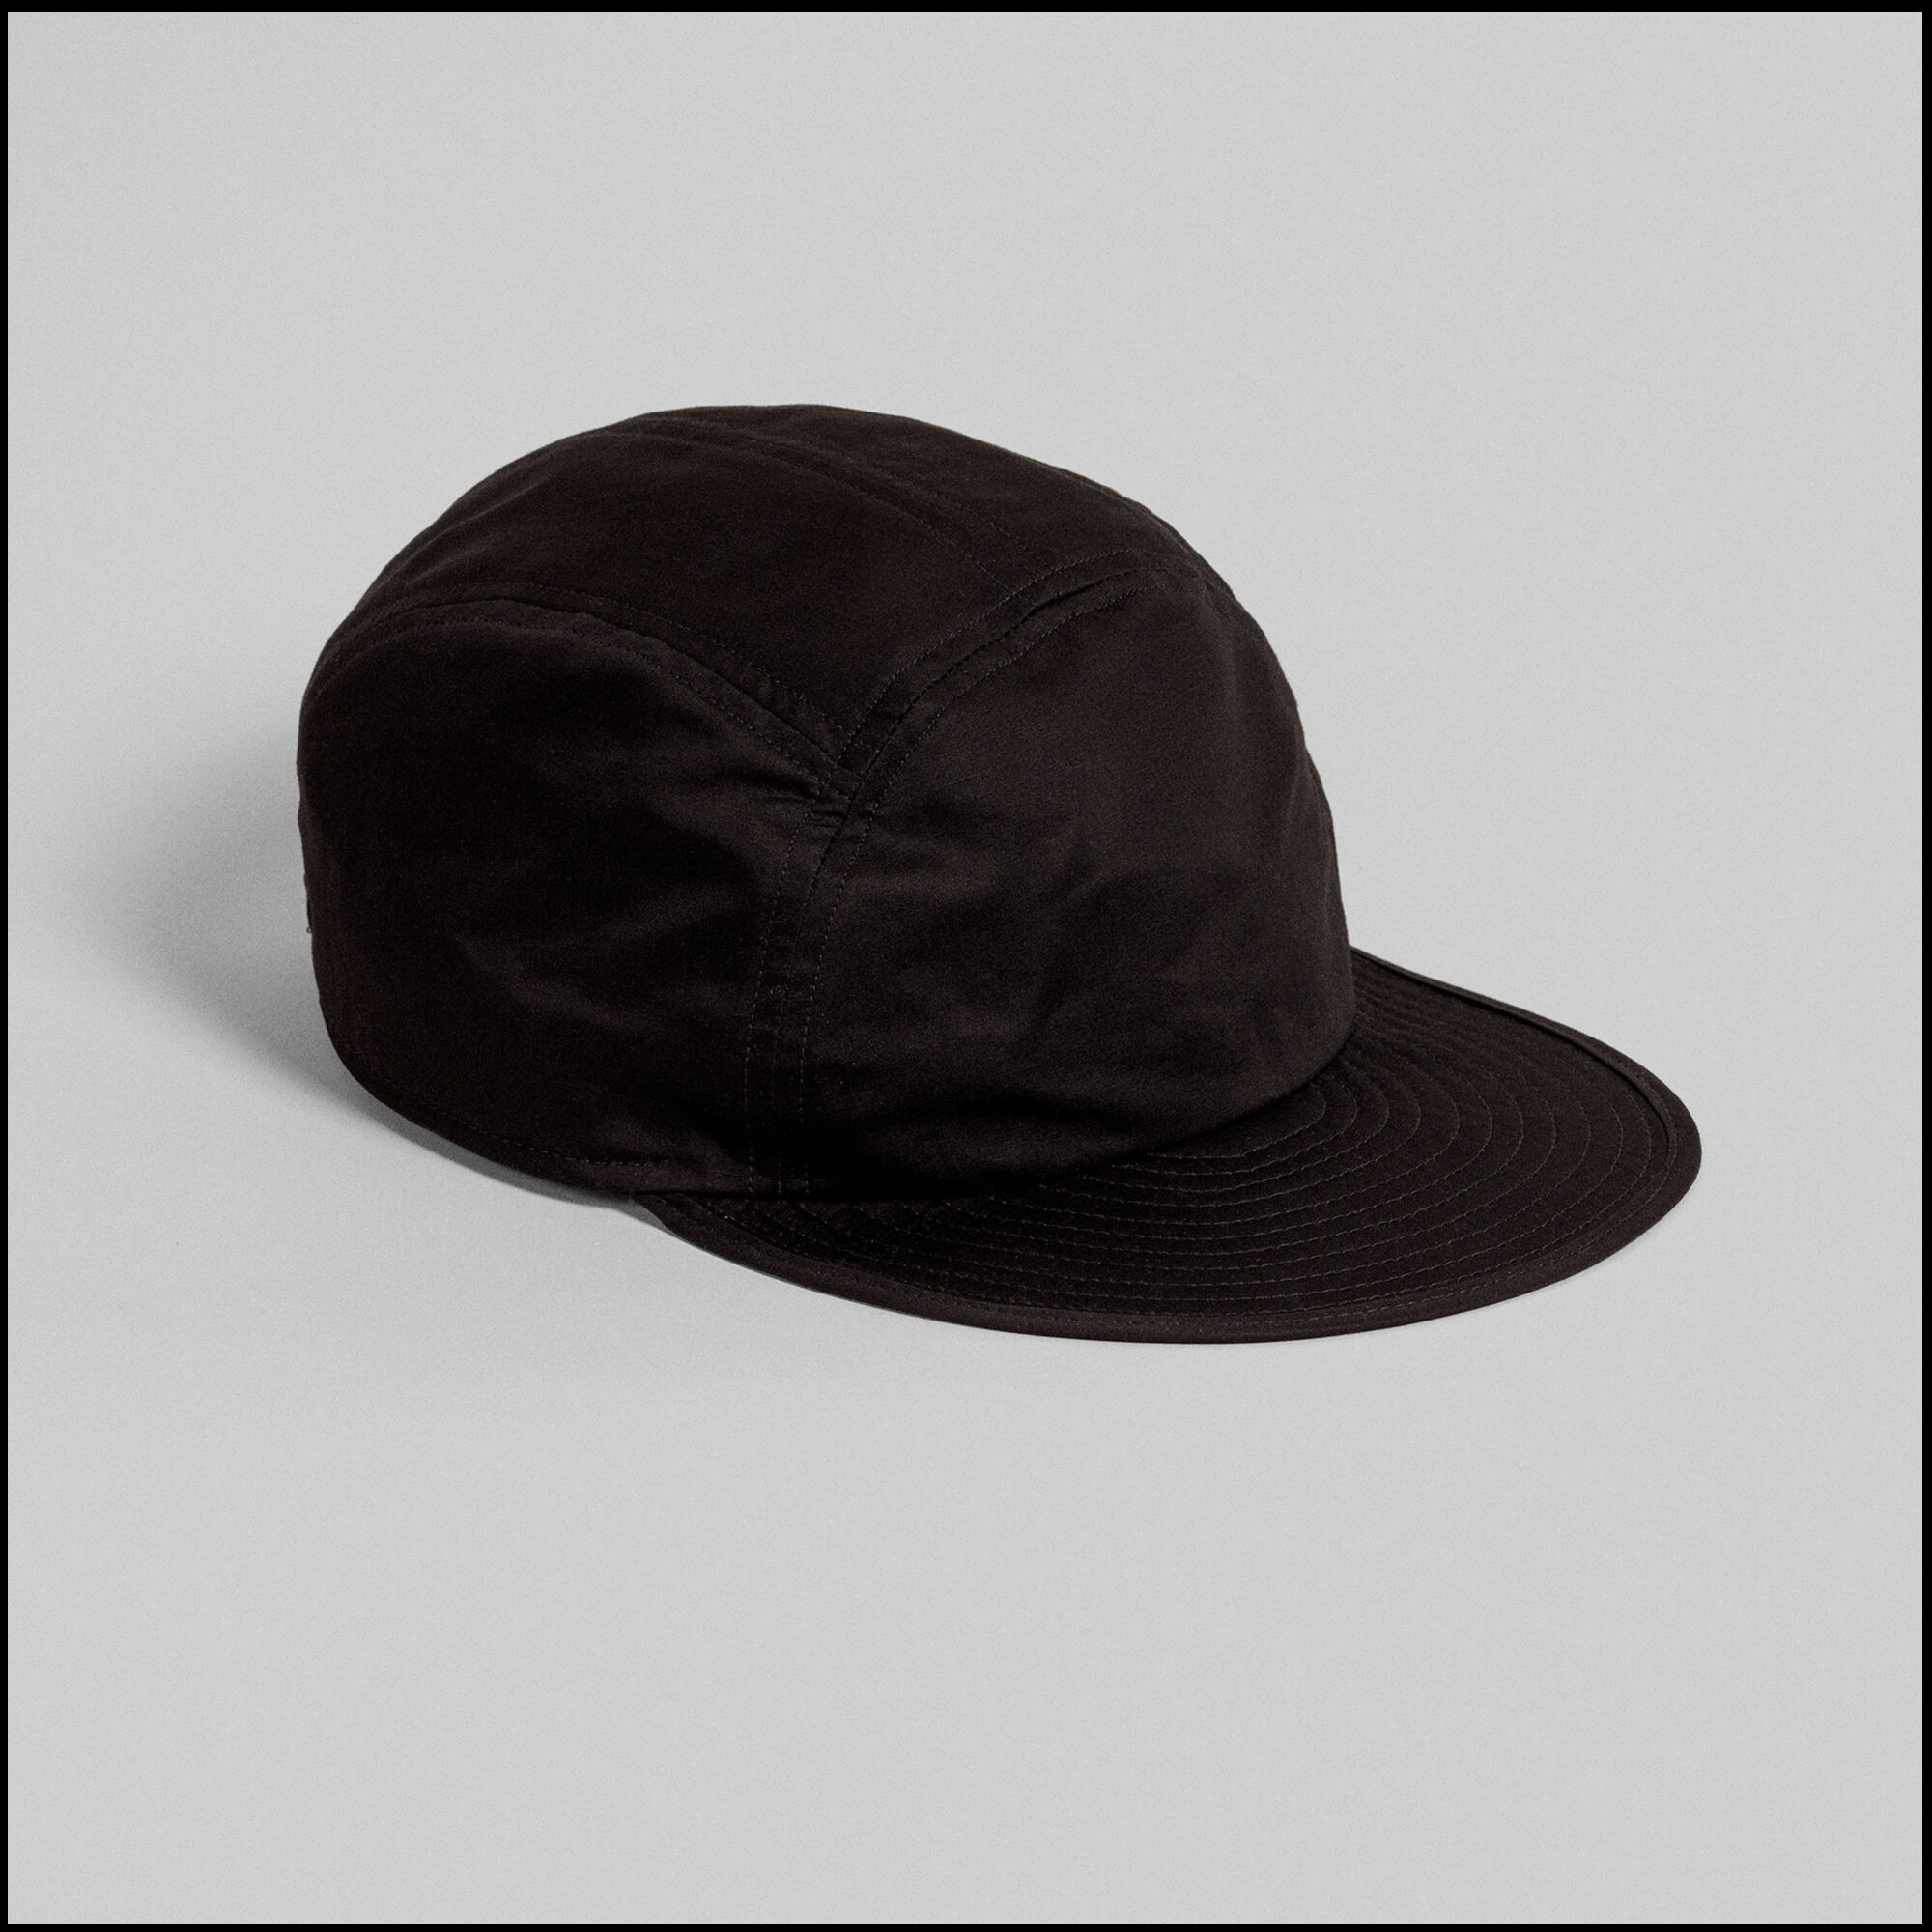 MARINA cap by Arpenteur in Black Taffetas color